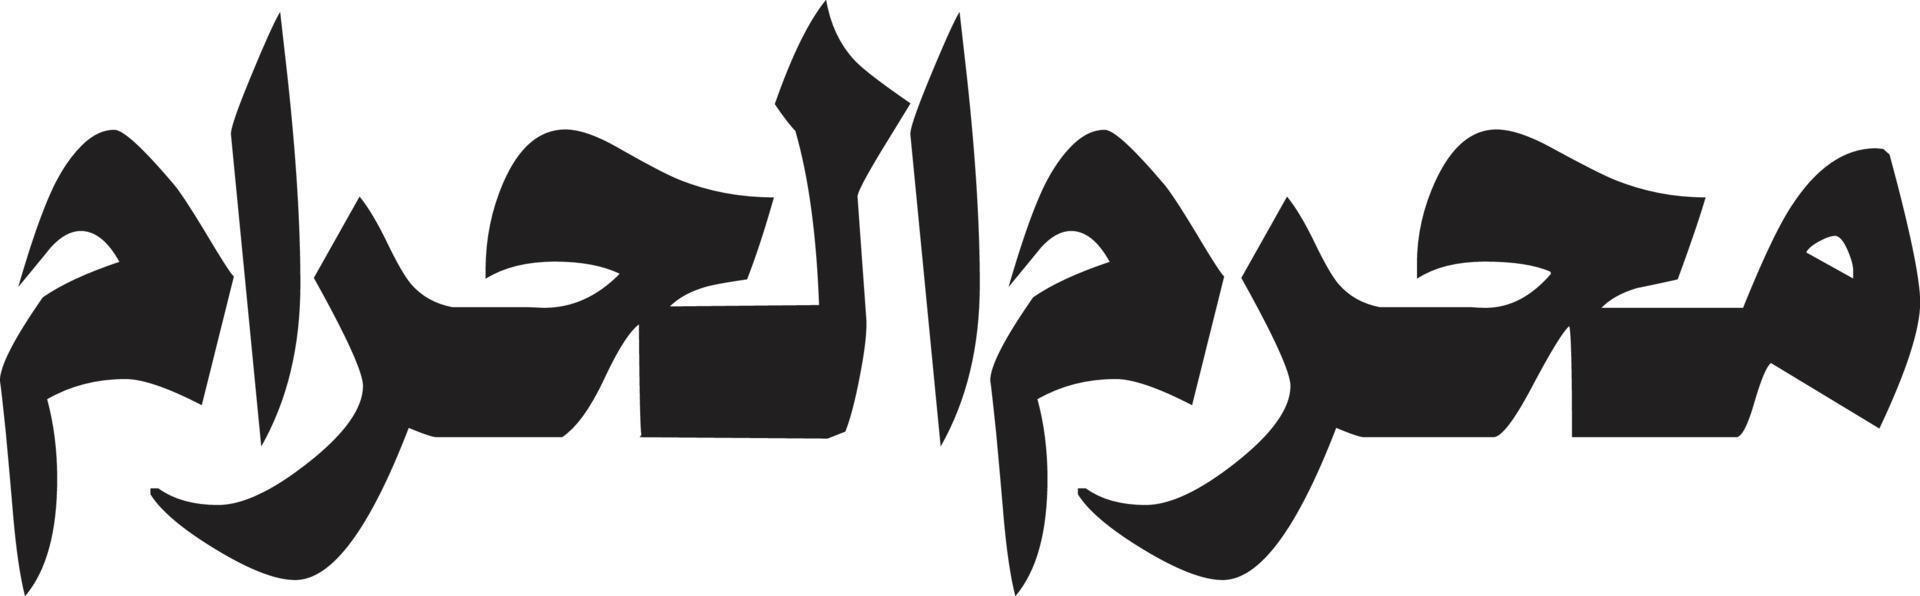 muharm al haram titolo islamico Arabo calligrafia gratuito vettore